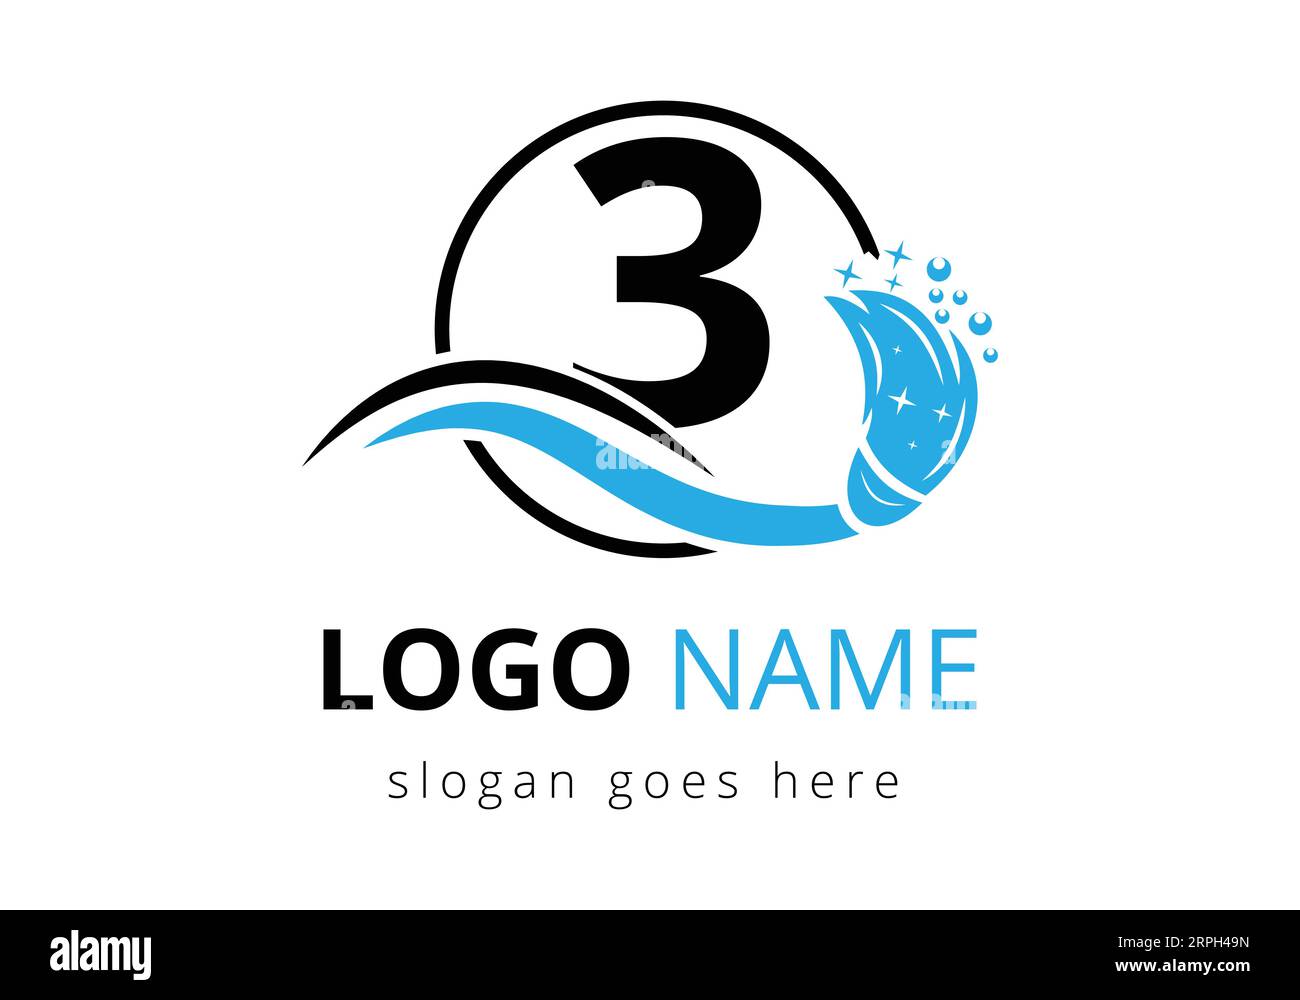 Design-Vorlage für das Logo des Reinigungsdienstes „Letter 3“ Stock Vektor